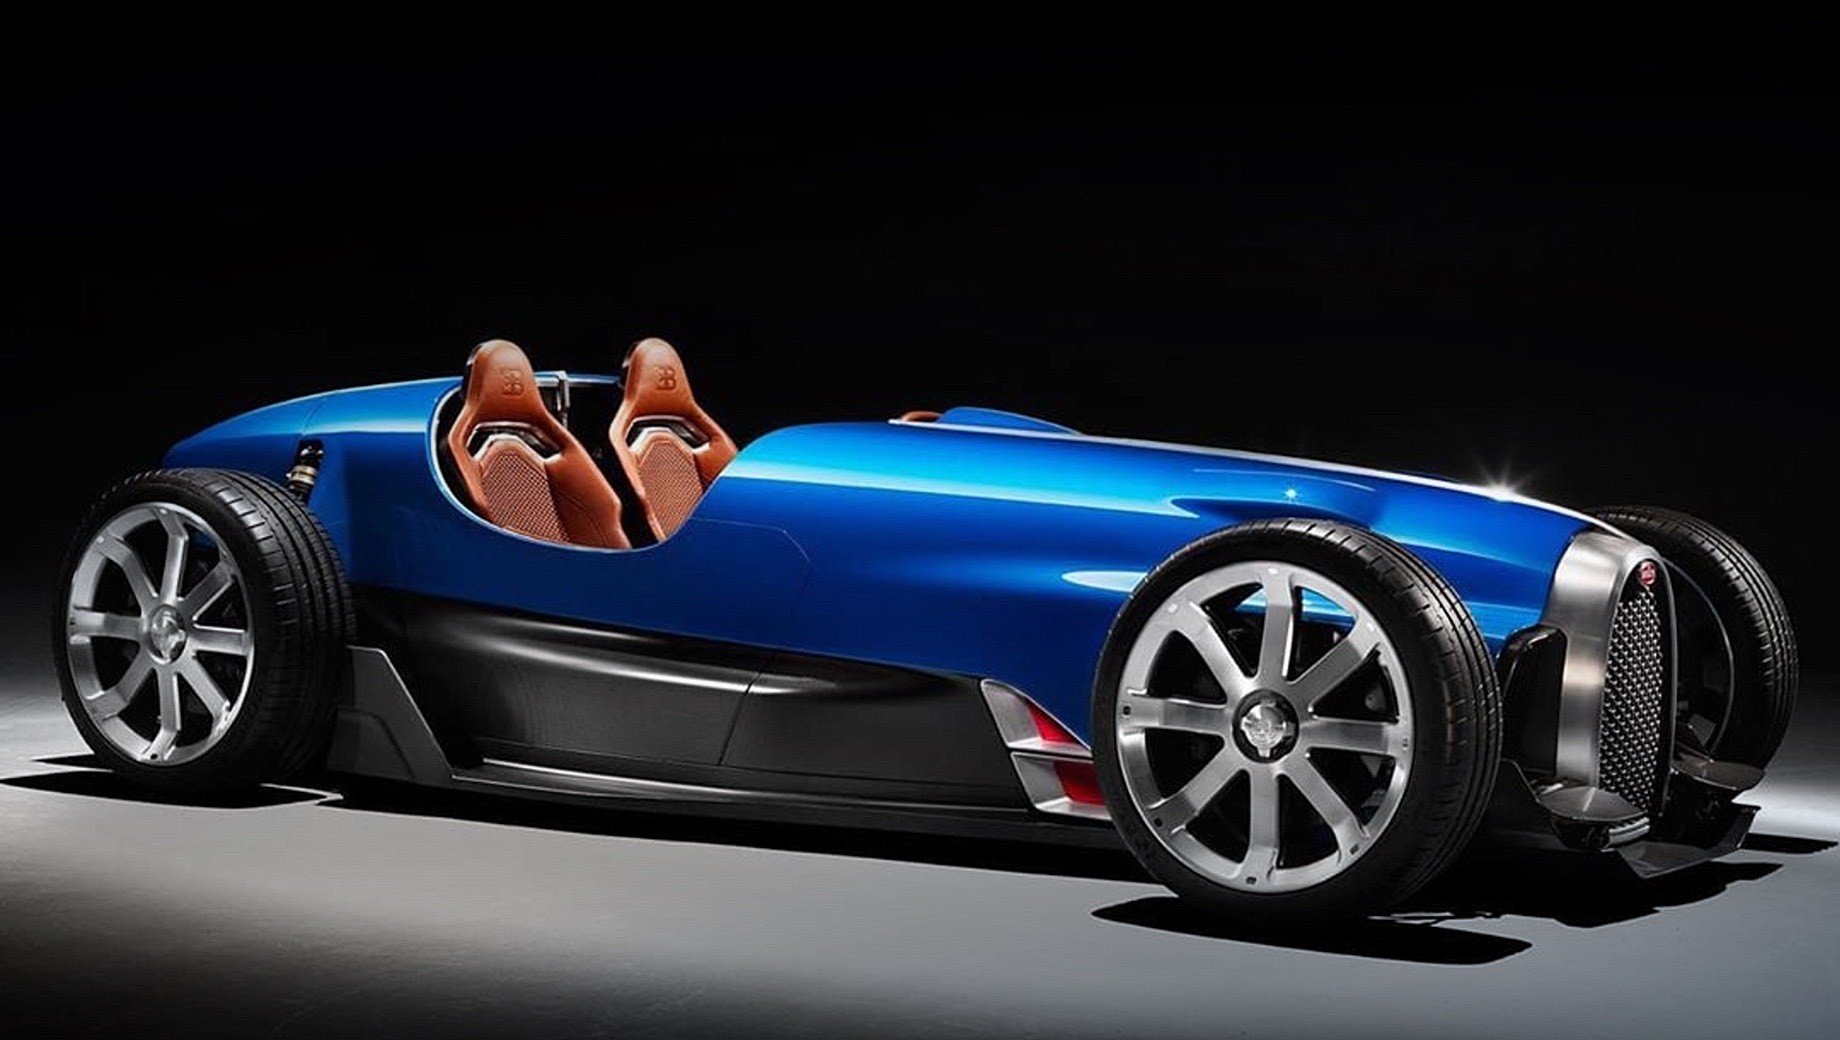 Bugatti type 35,Bugatti type 35 d. Главная задача дизайнеров студии состояла в том, чтобы сохранить узнаваемость оригинального родстера. У концепта открыты колёса и элементы подвески, а форма решётки радиатора повторяет таковую у настоящего Bugatti. А вот пропорции новые — машина заметно длиннее и ниже.